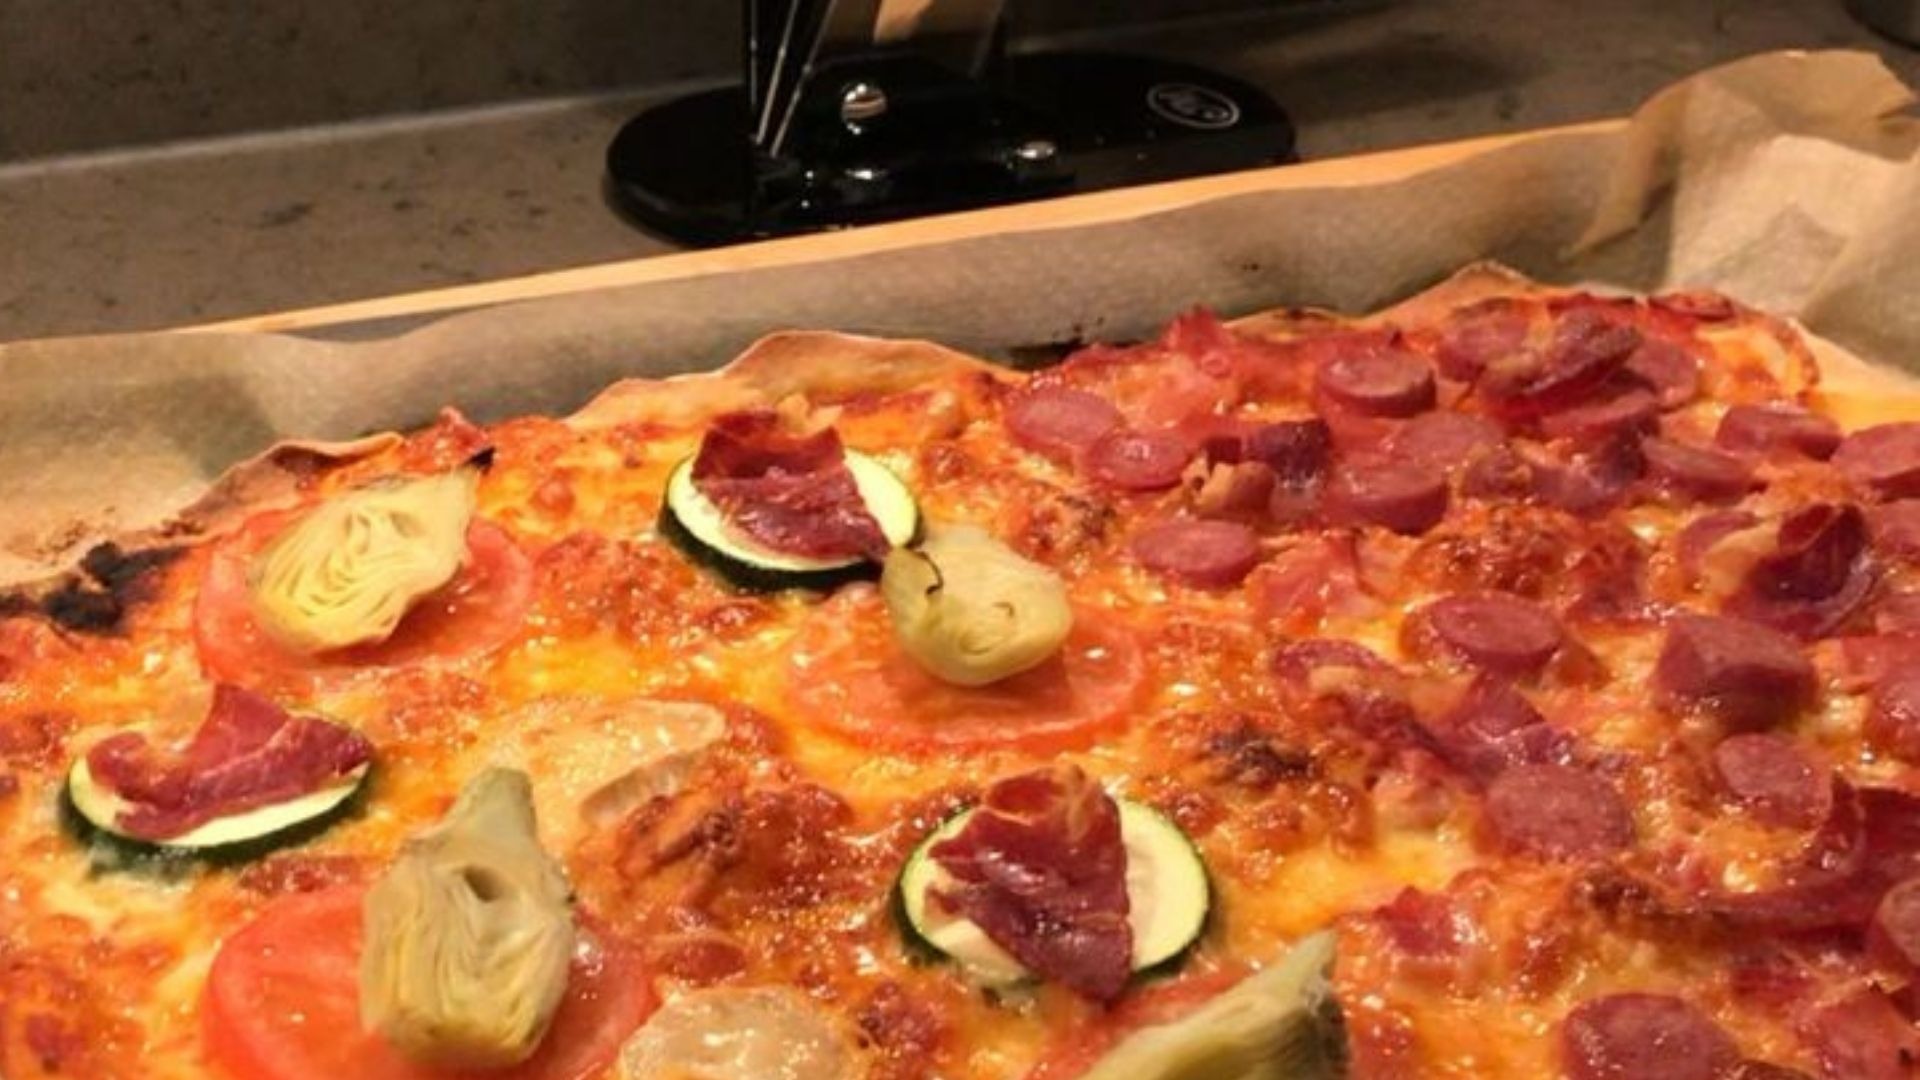 Cómo hacer una pizza casera. Deliciosa y fácil.